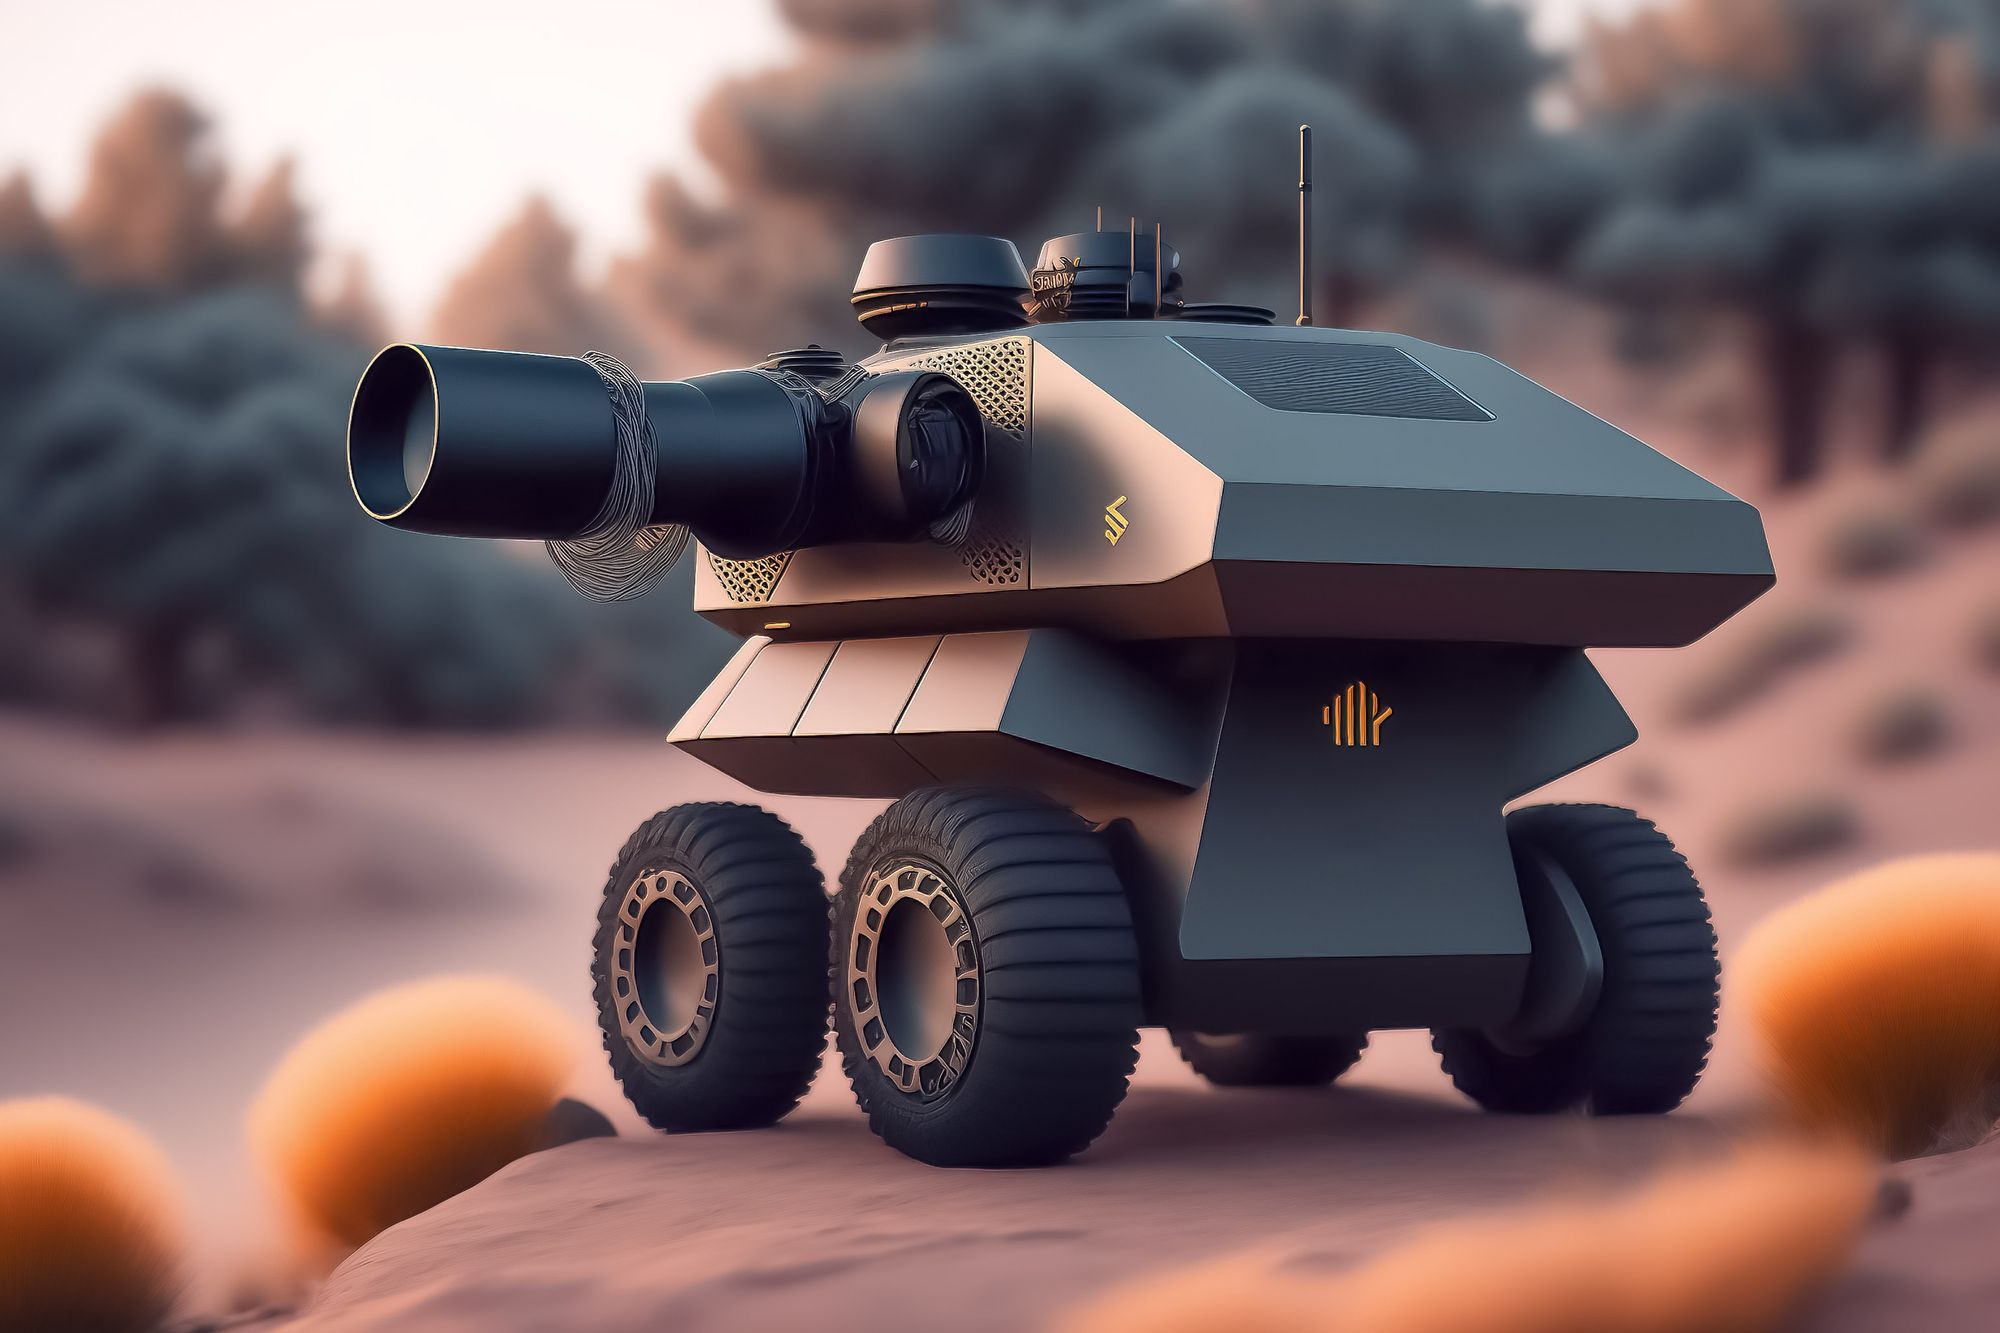 An autonomous machine gun turret concept generated by AI